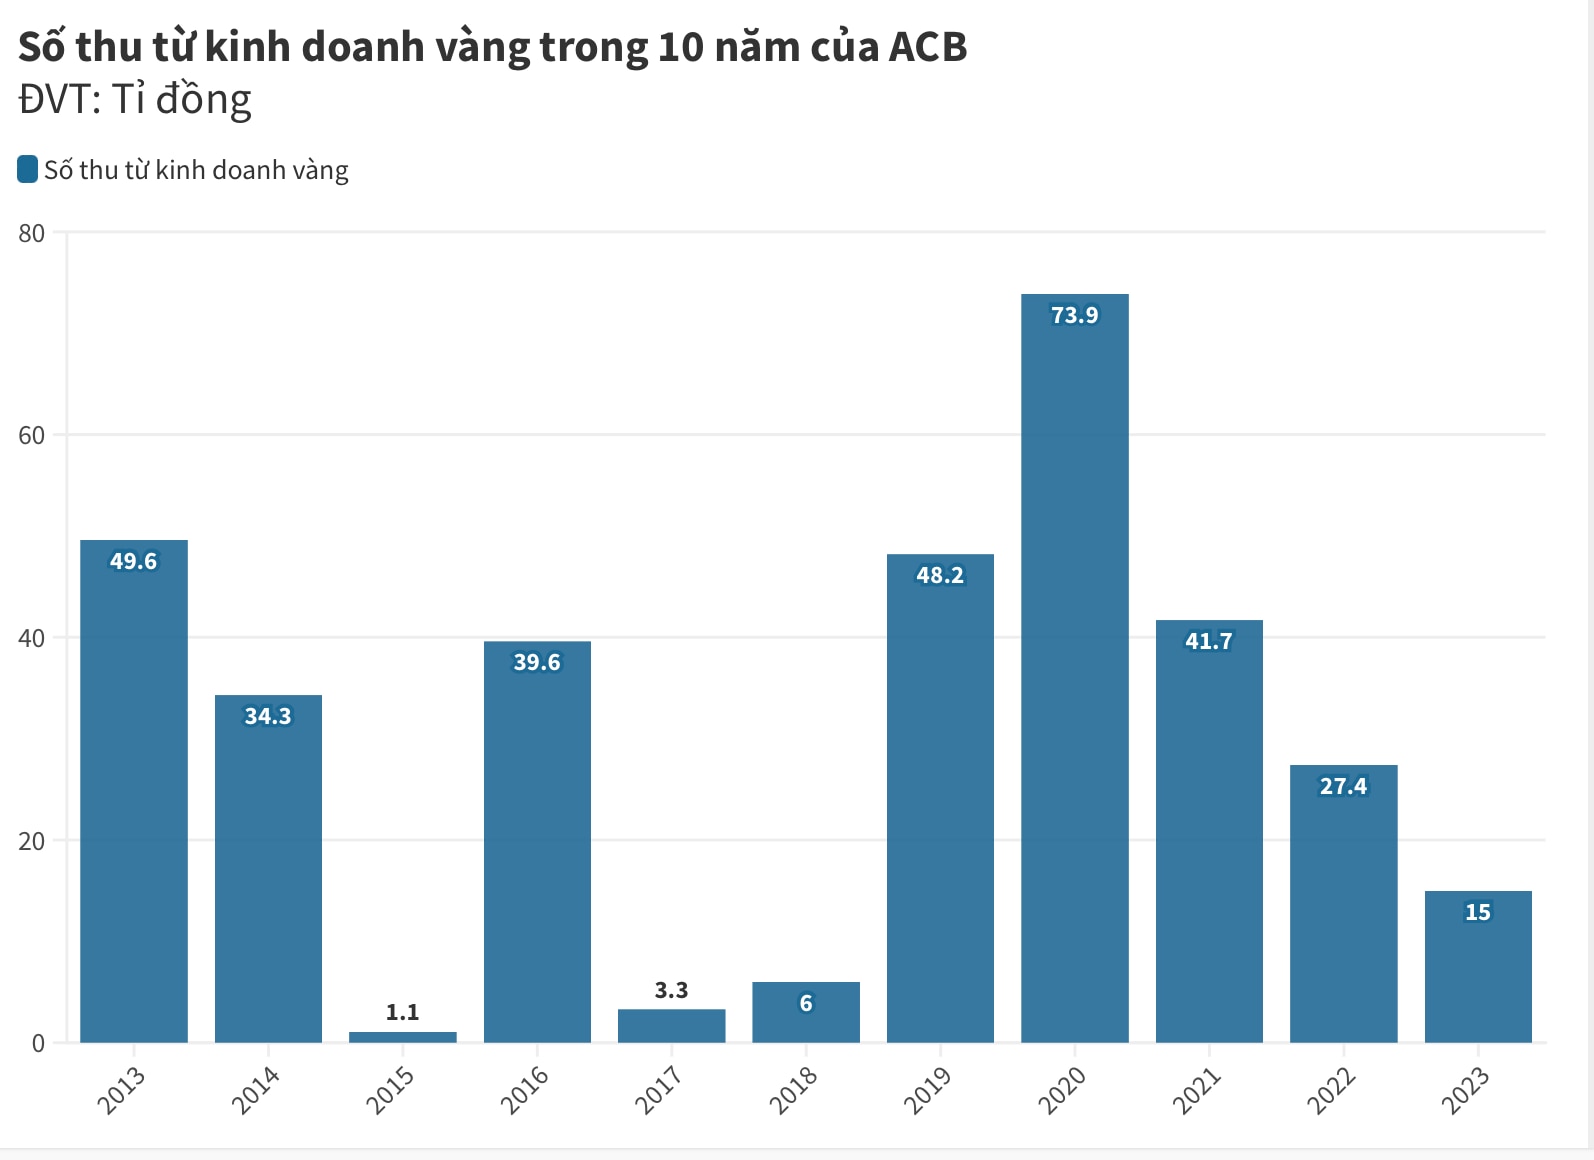 Lãi từ hoạt động kinh doanh vàng của ACB trong 10 năm trở lại đây. Nguồn tổng hợp từ báo cáo tài chính của ACB qua các năm. Biểu đồ: Minh Ánh.